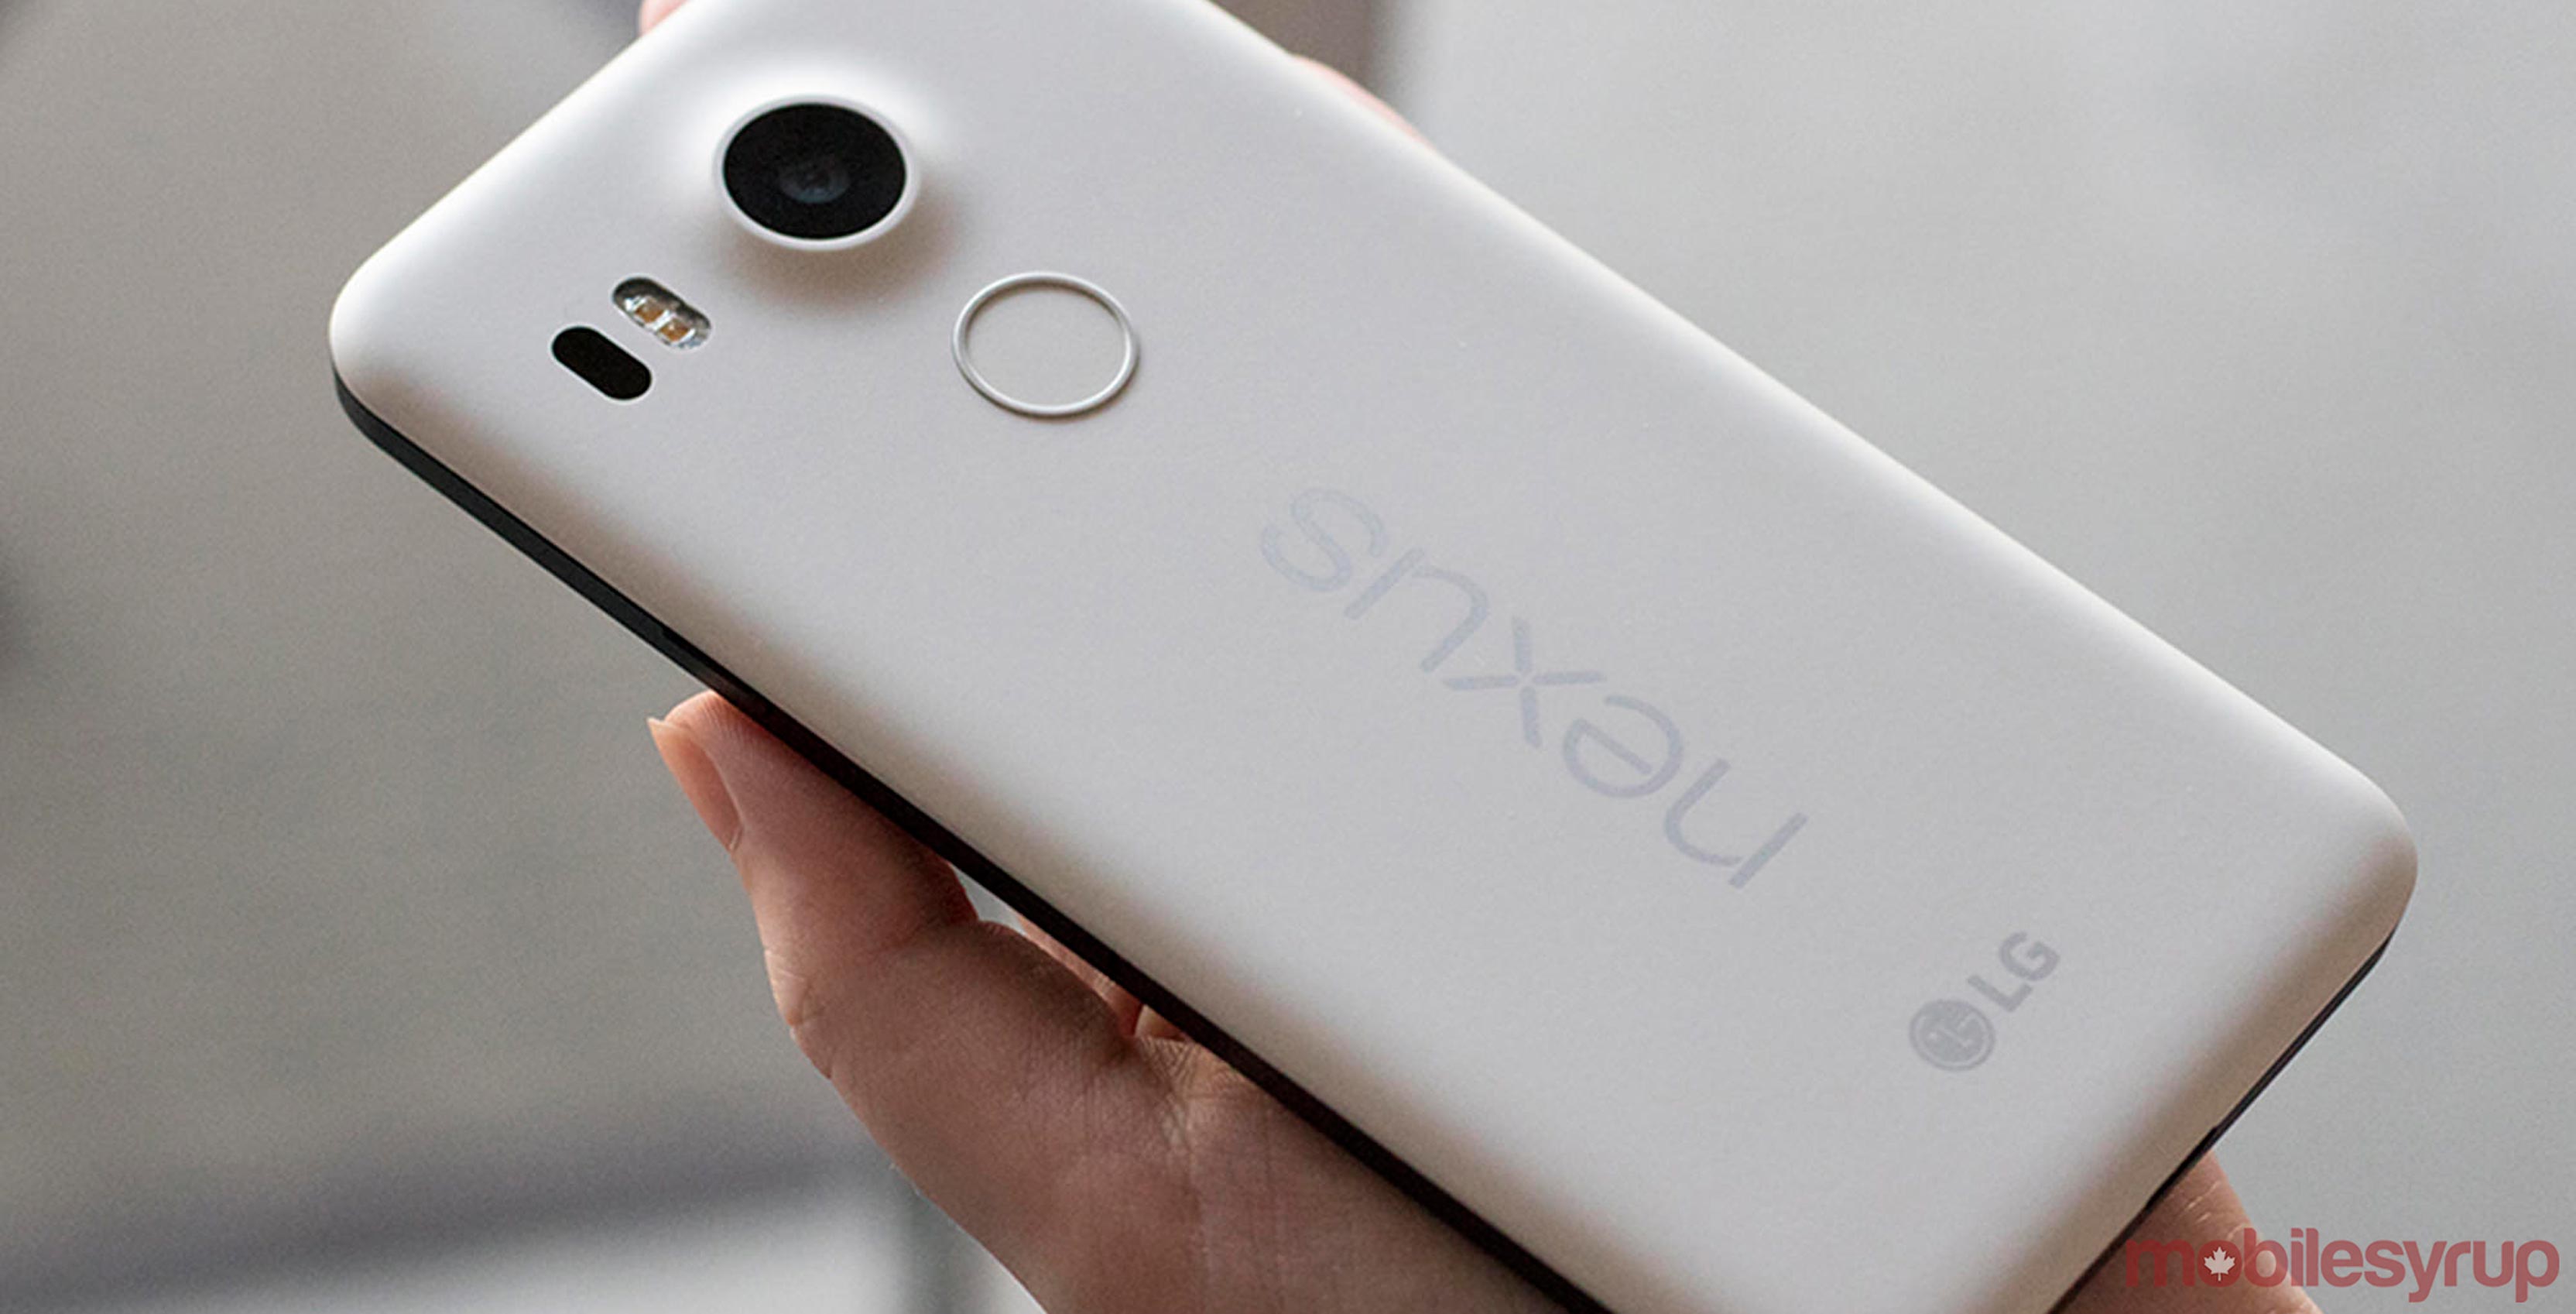 Nexus 5X smartphone